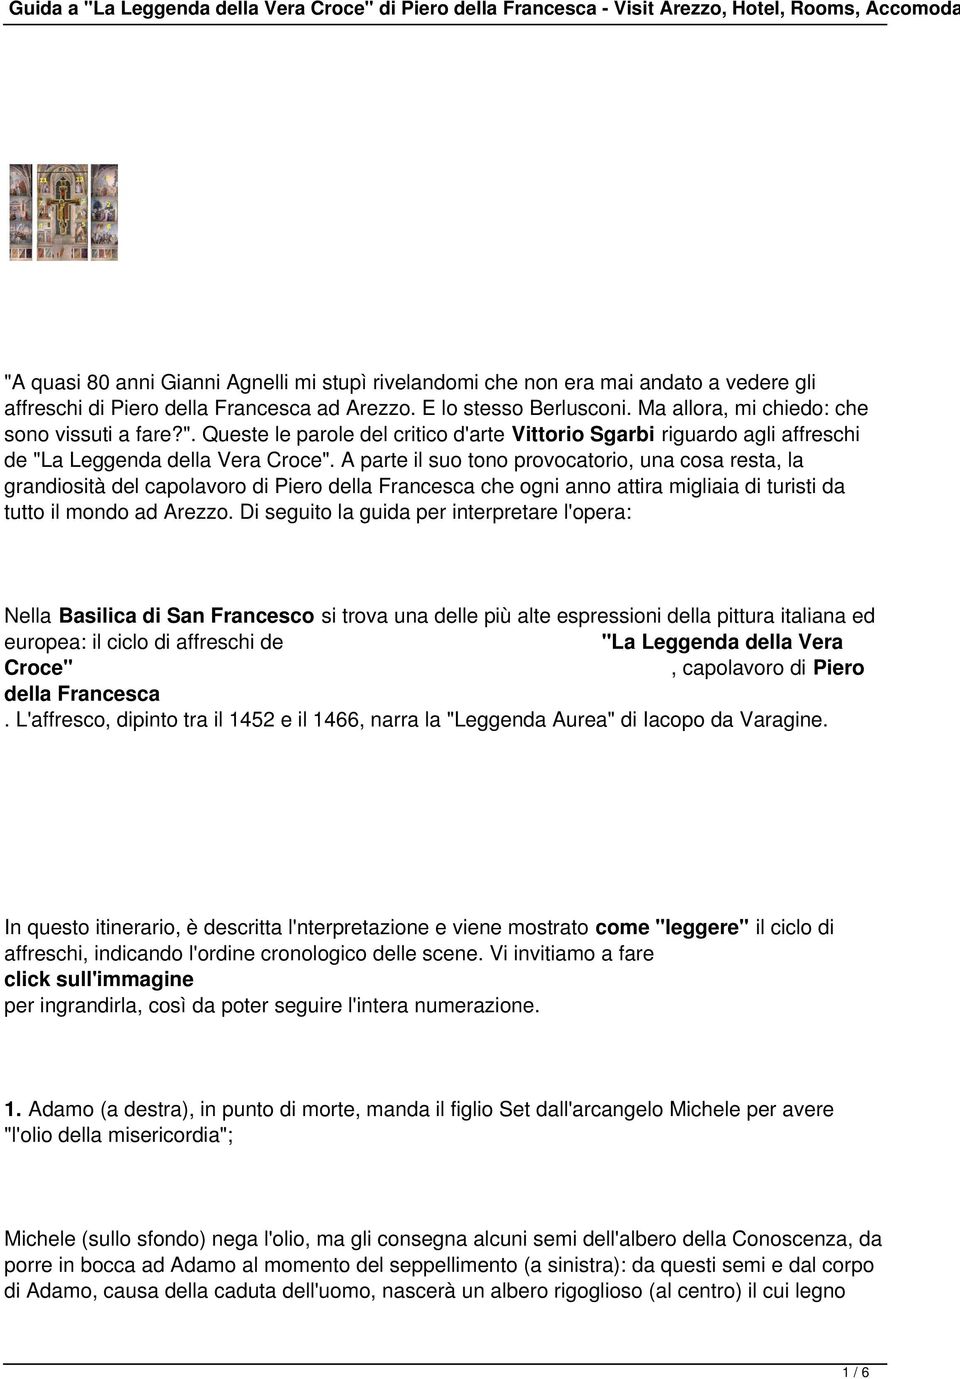 Queste le parole del critico d'arte Vittorio Sgarbi riguardo agli affreschi de "La Leggenda della Vera Croce".